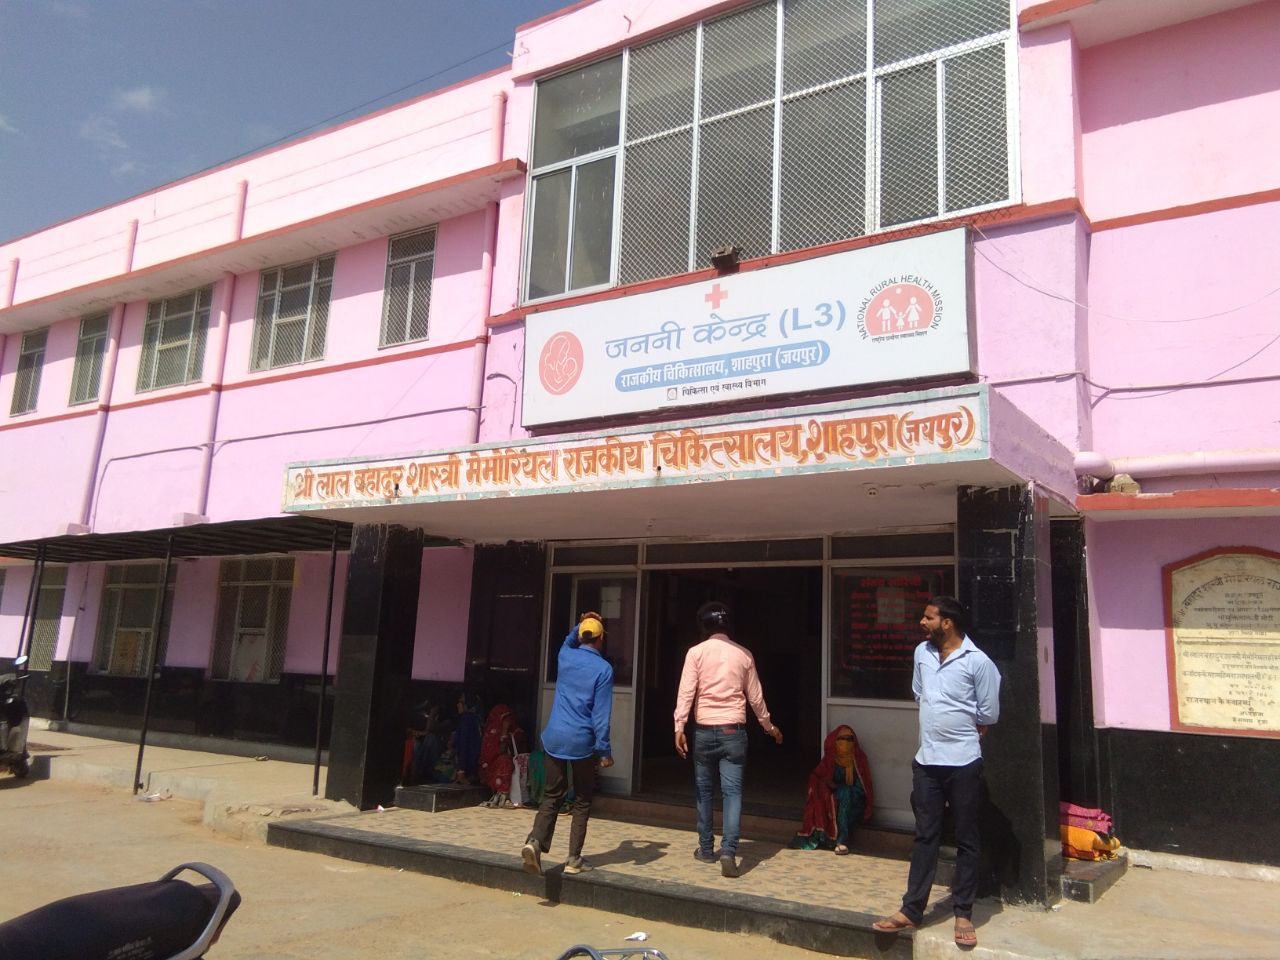 Good news--शाहपुरा क्षेत्रवासियों को उपजिला चिकित्सालय की सौगात